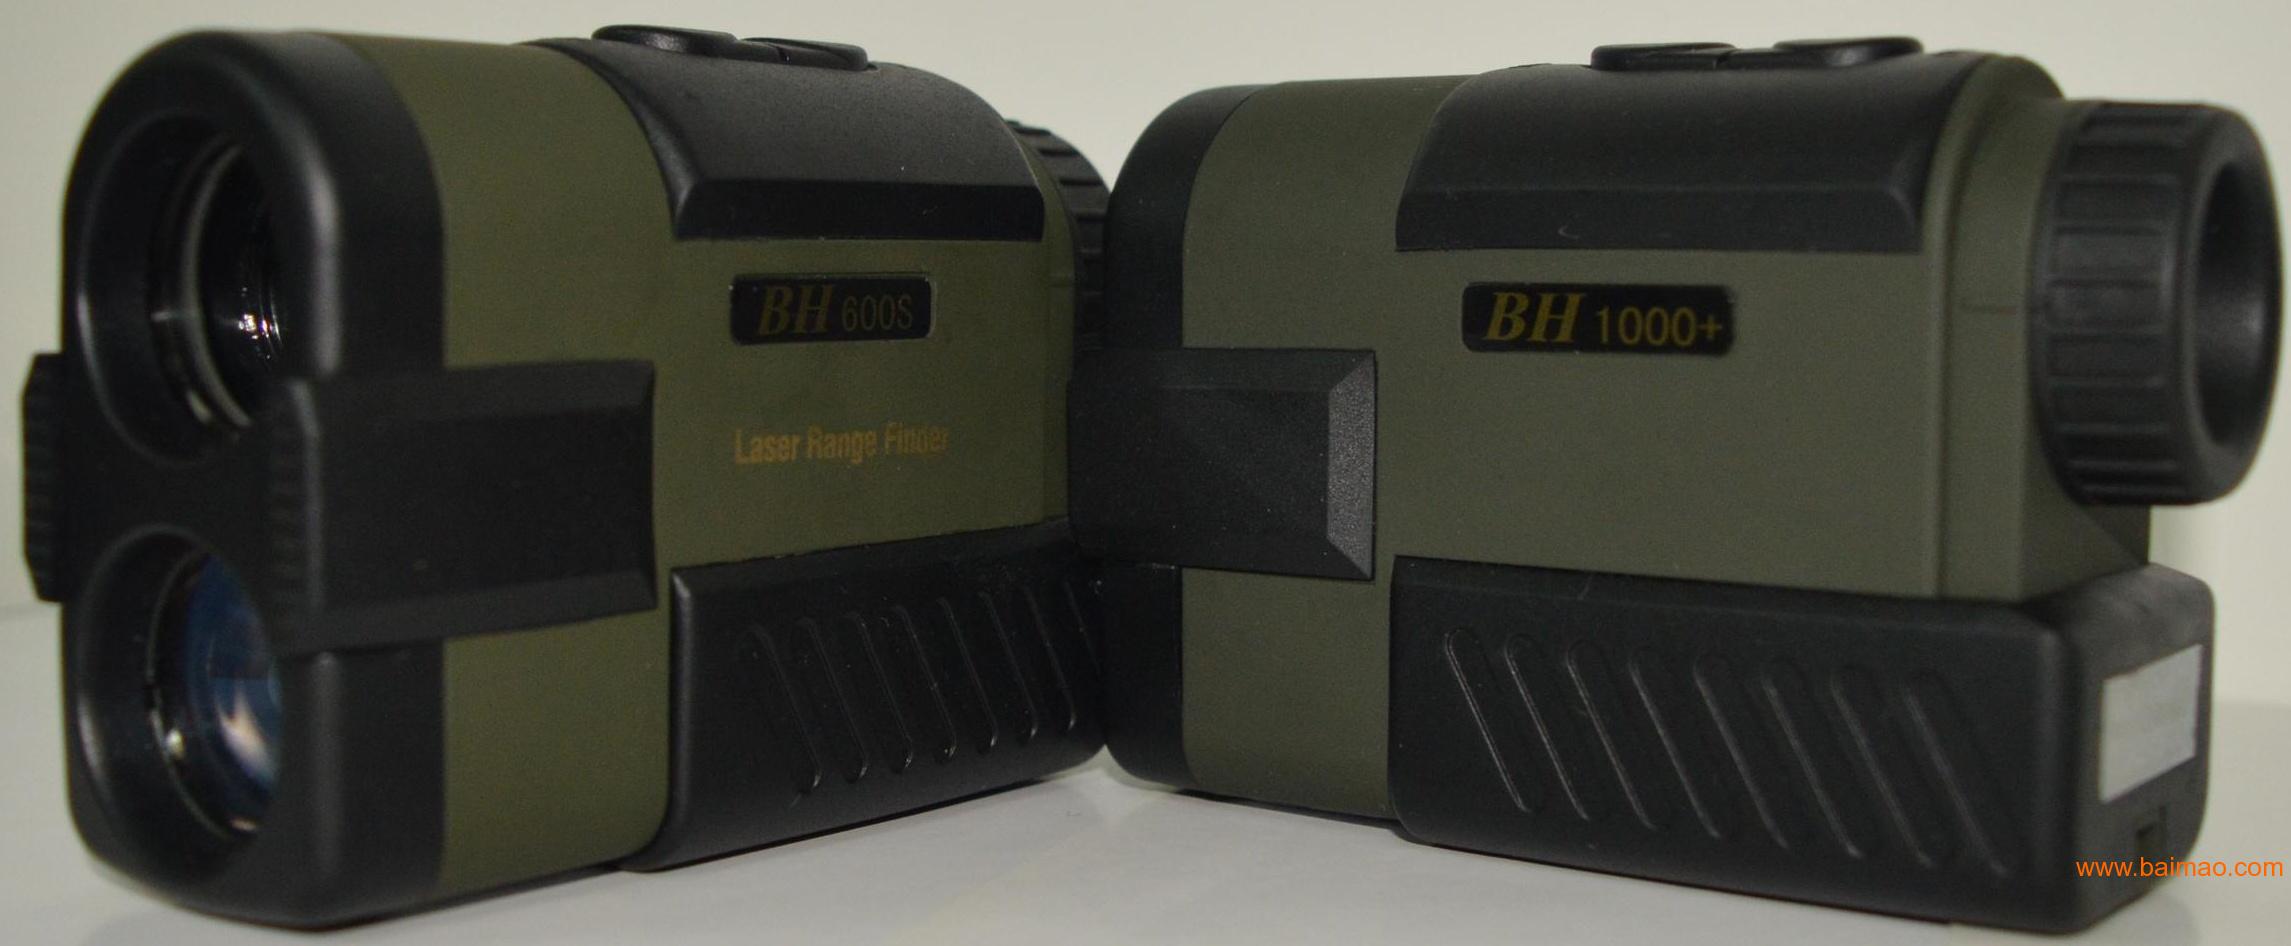 博海恒升仪器手持式测距仪BH600S